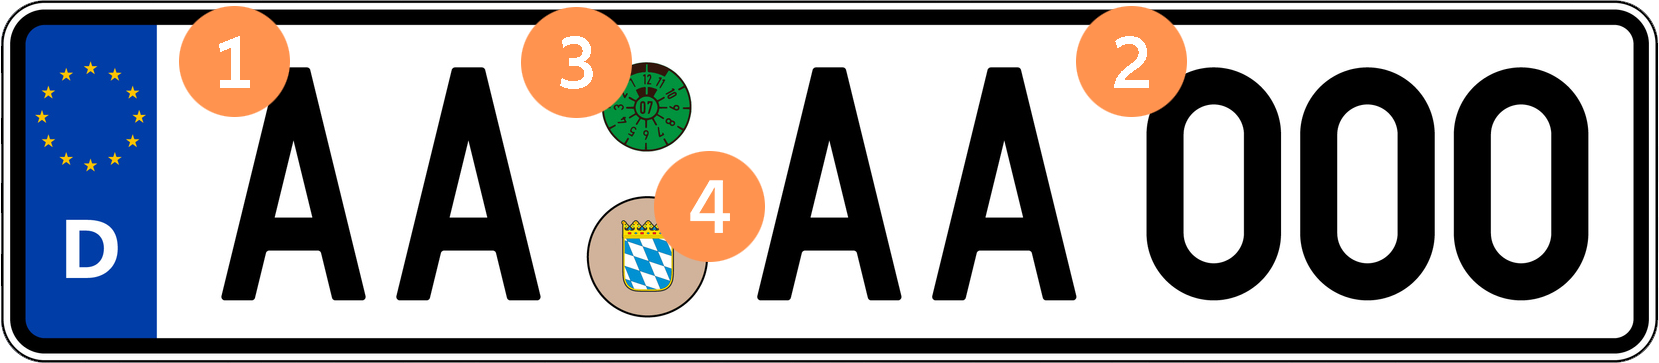 Pkw-Nummernschild mit grüner TÜV-Plakette und Stempelplakette des Freistaates Bayern